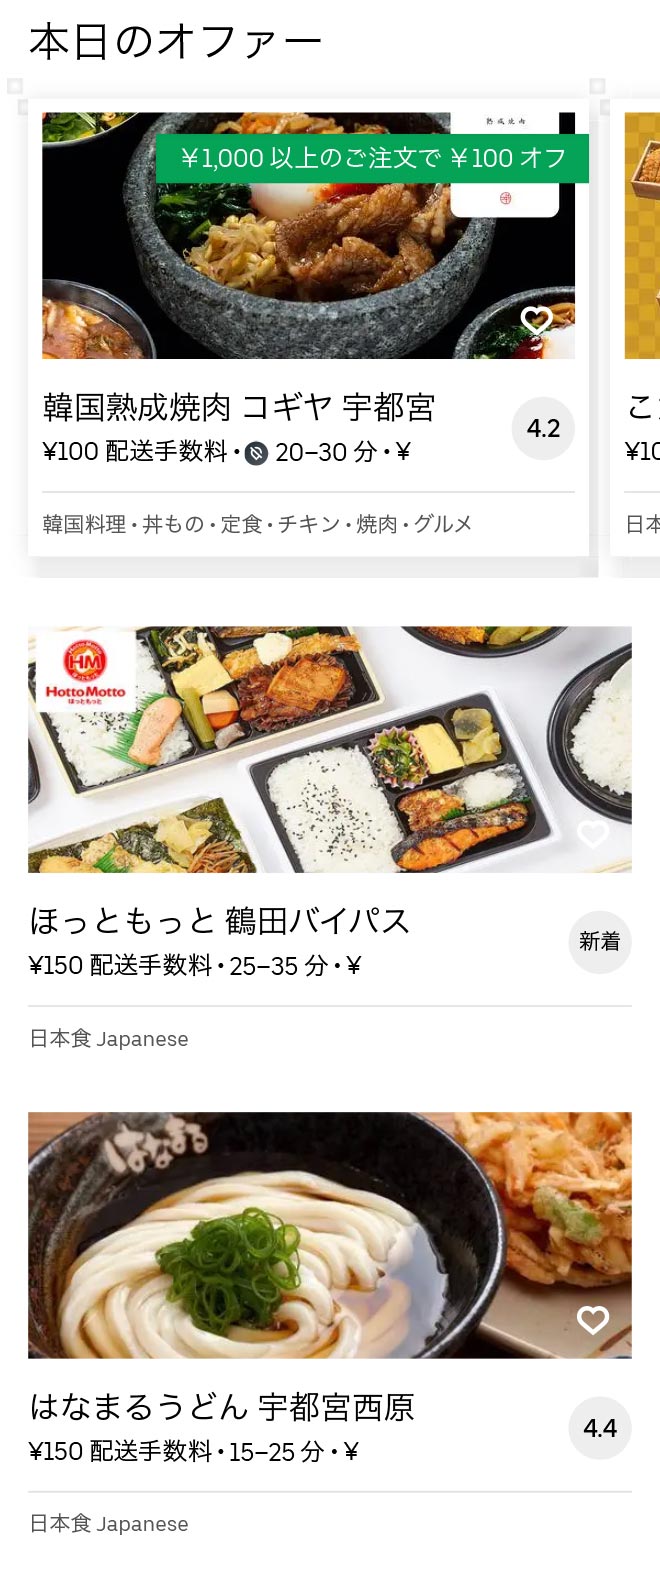 Tsuruta menu 2010 02